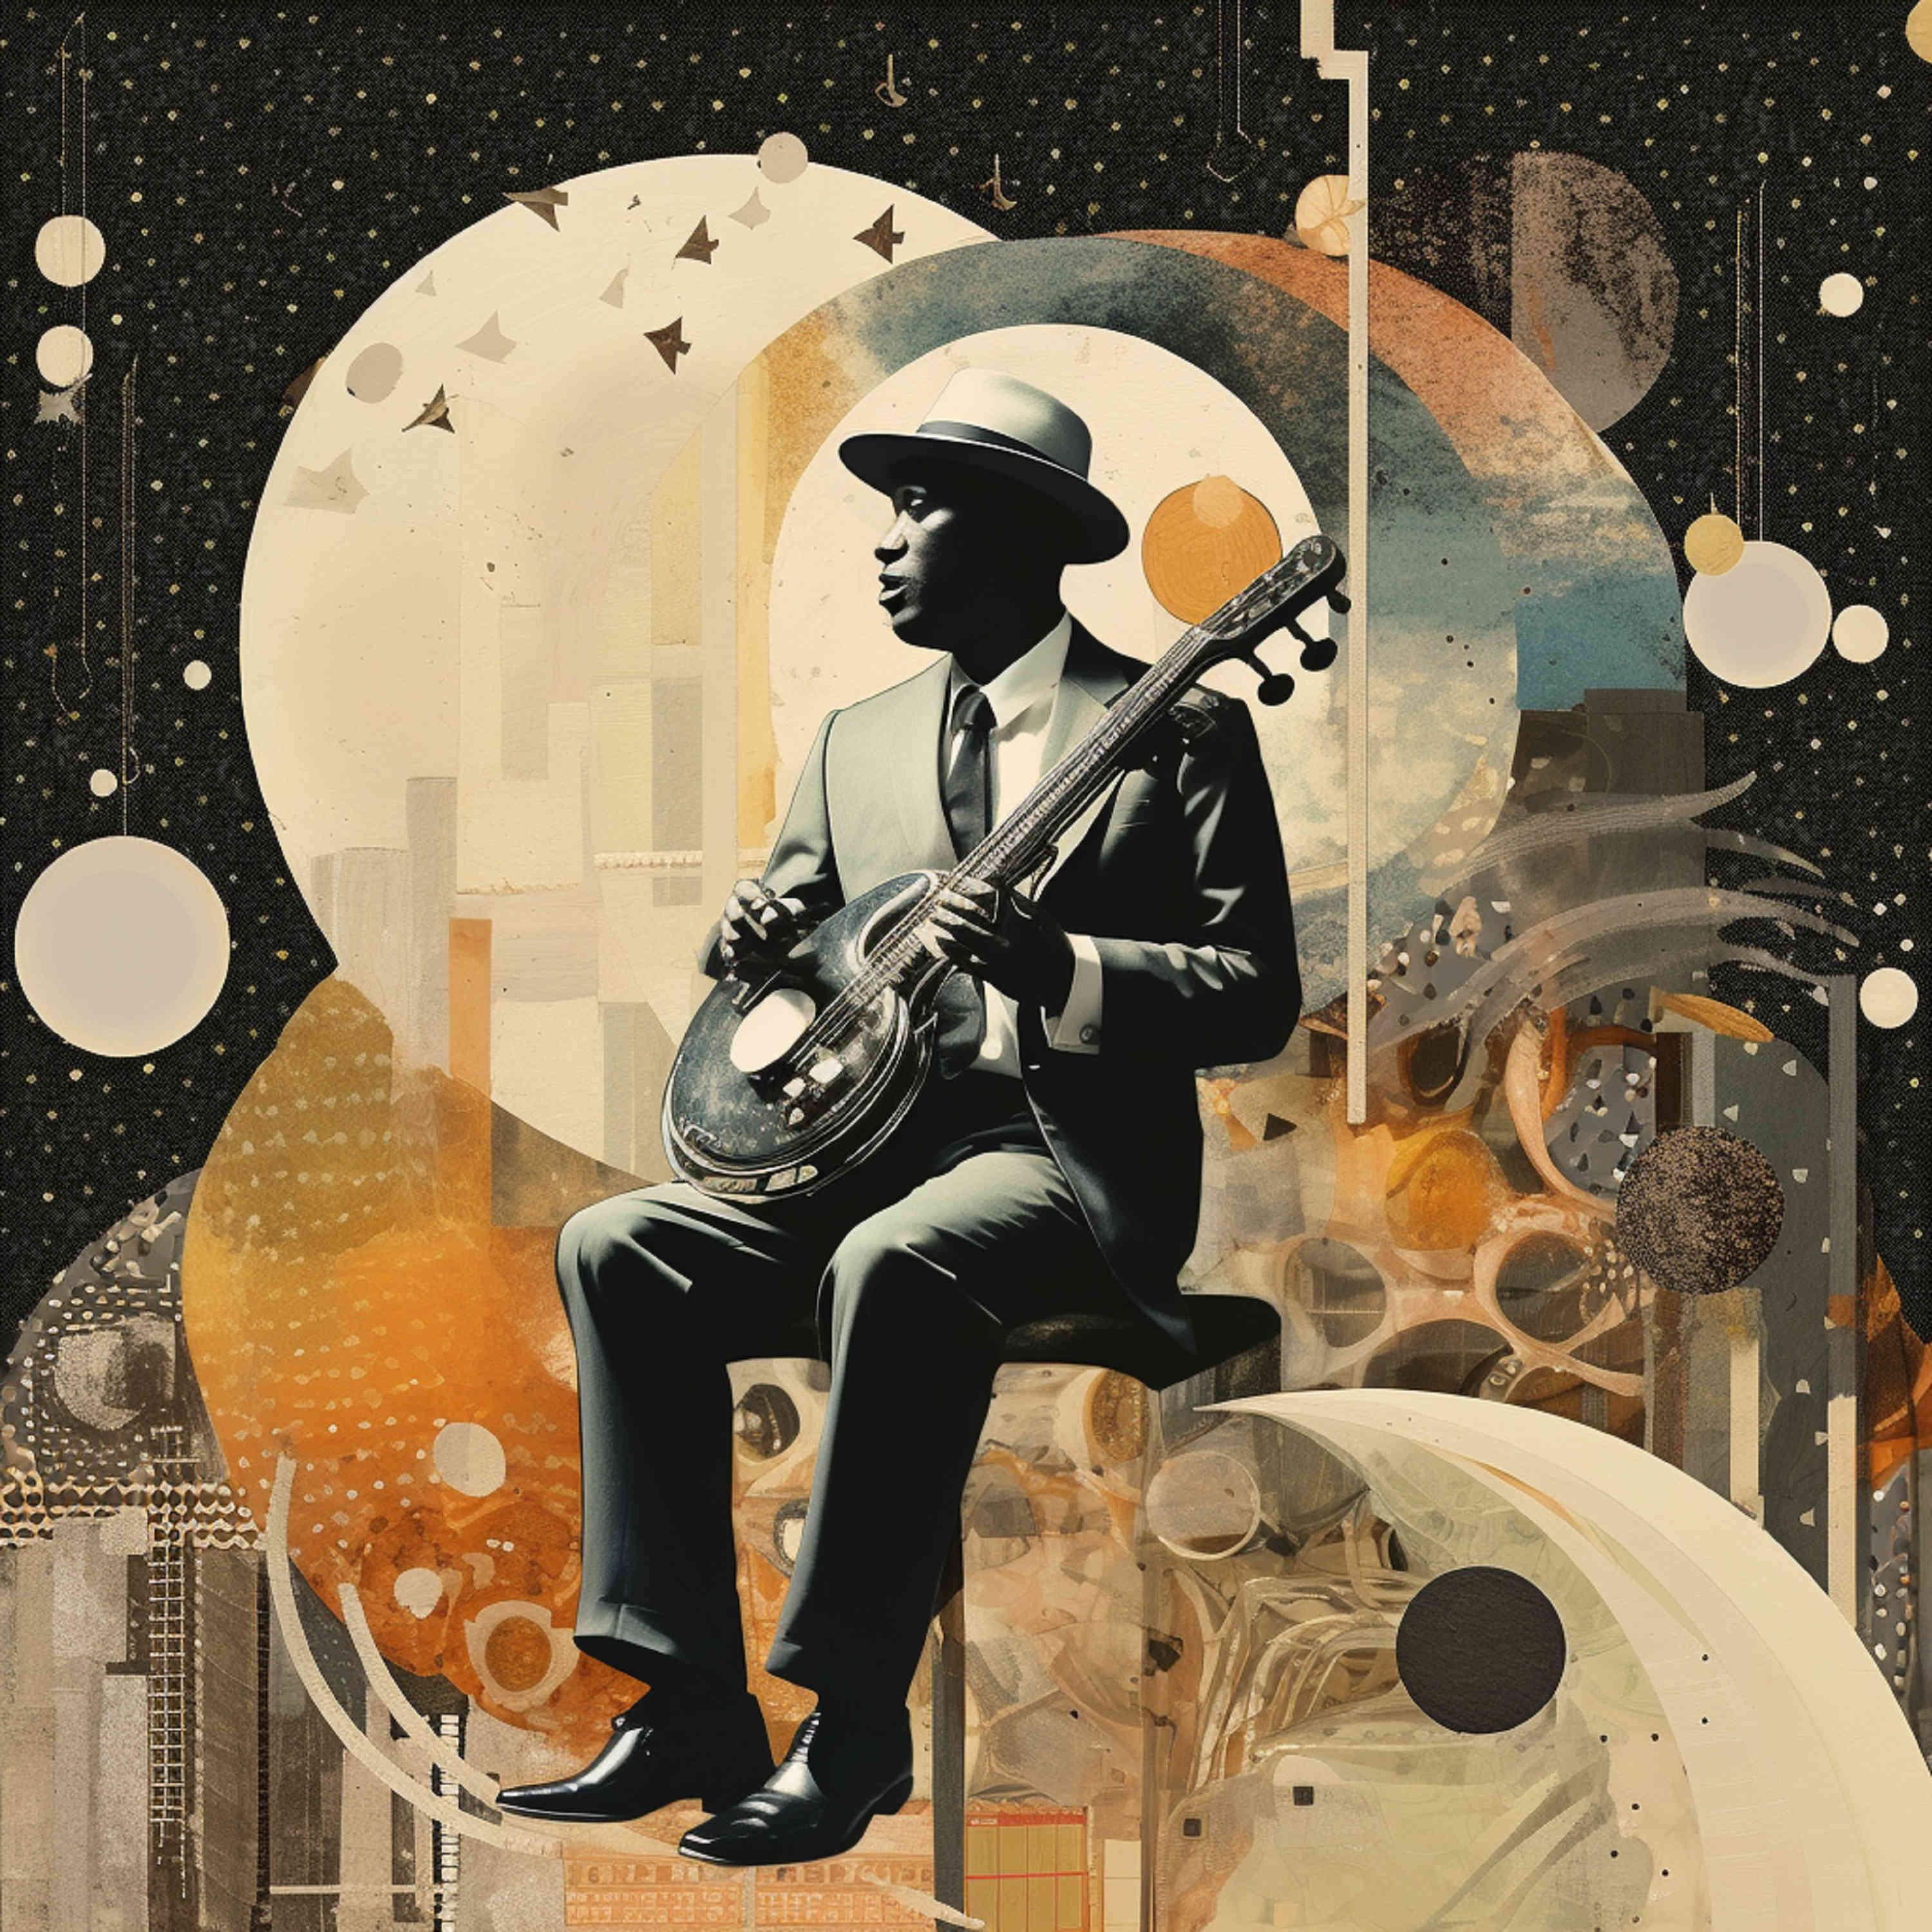 Постер альбома Moon Jazz